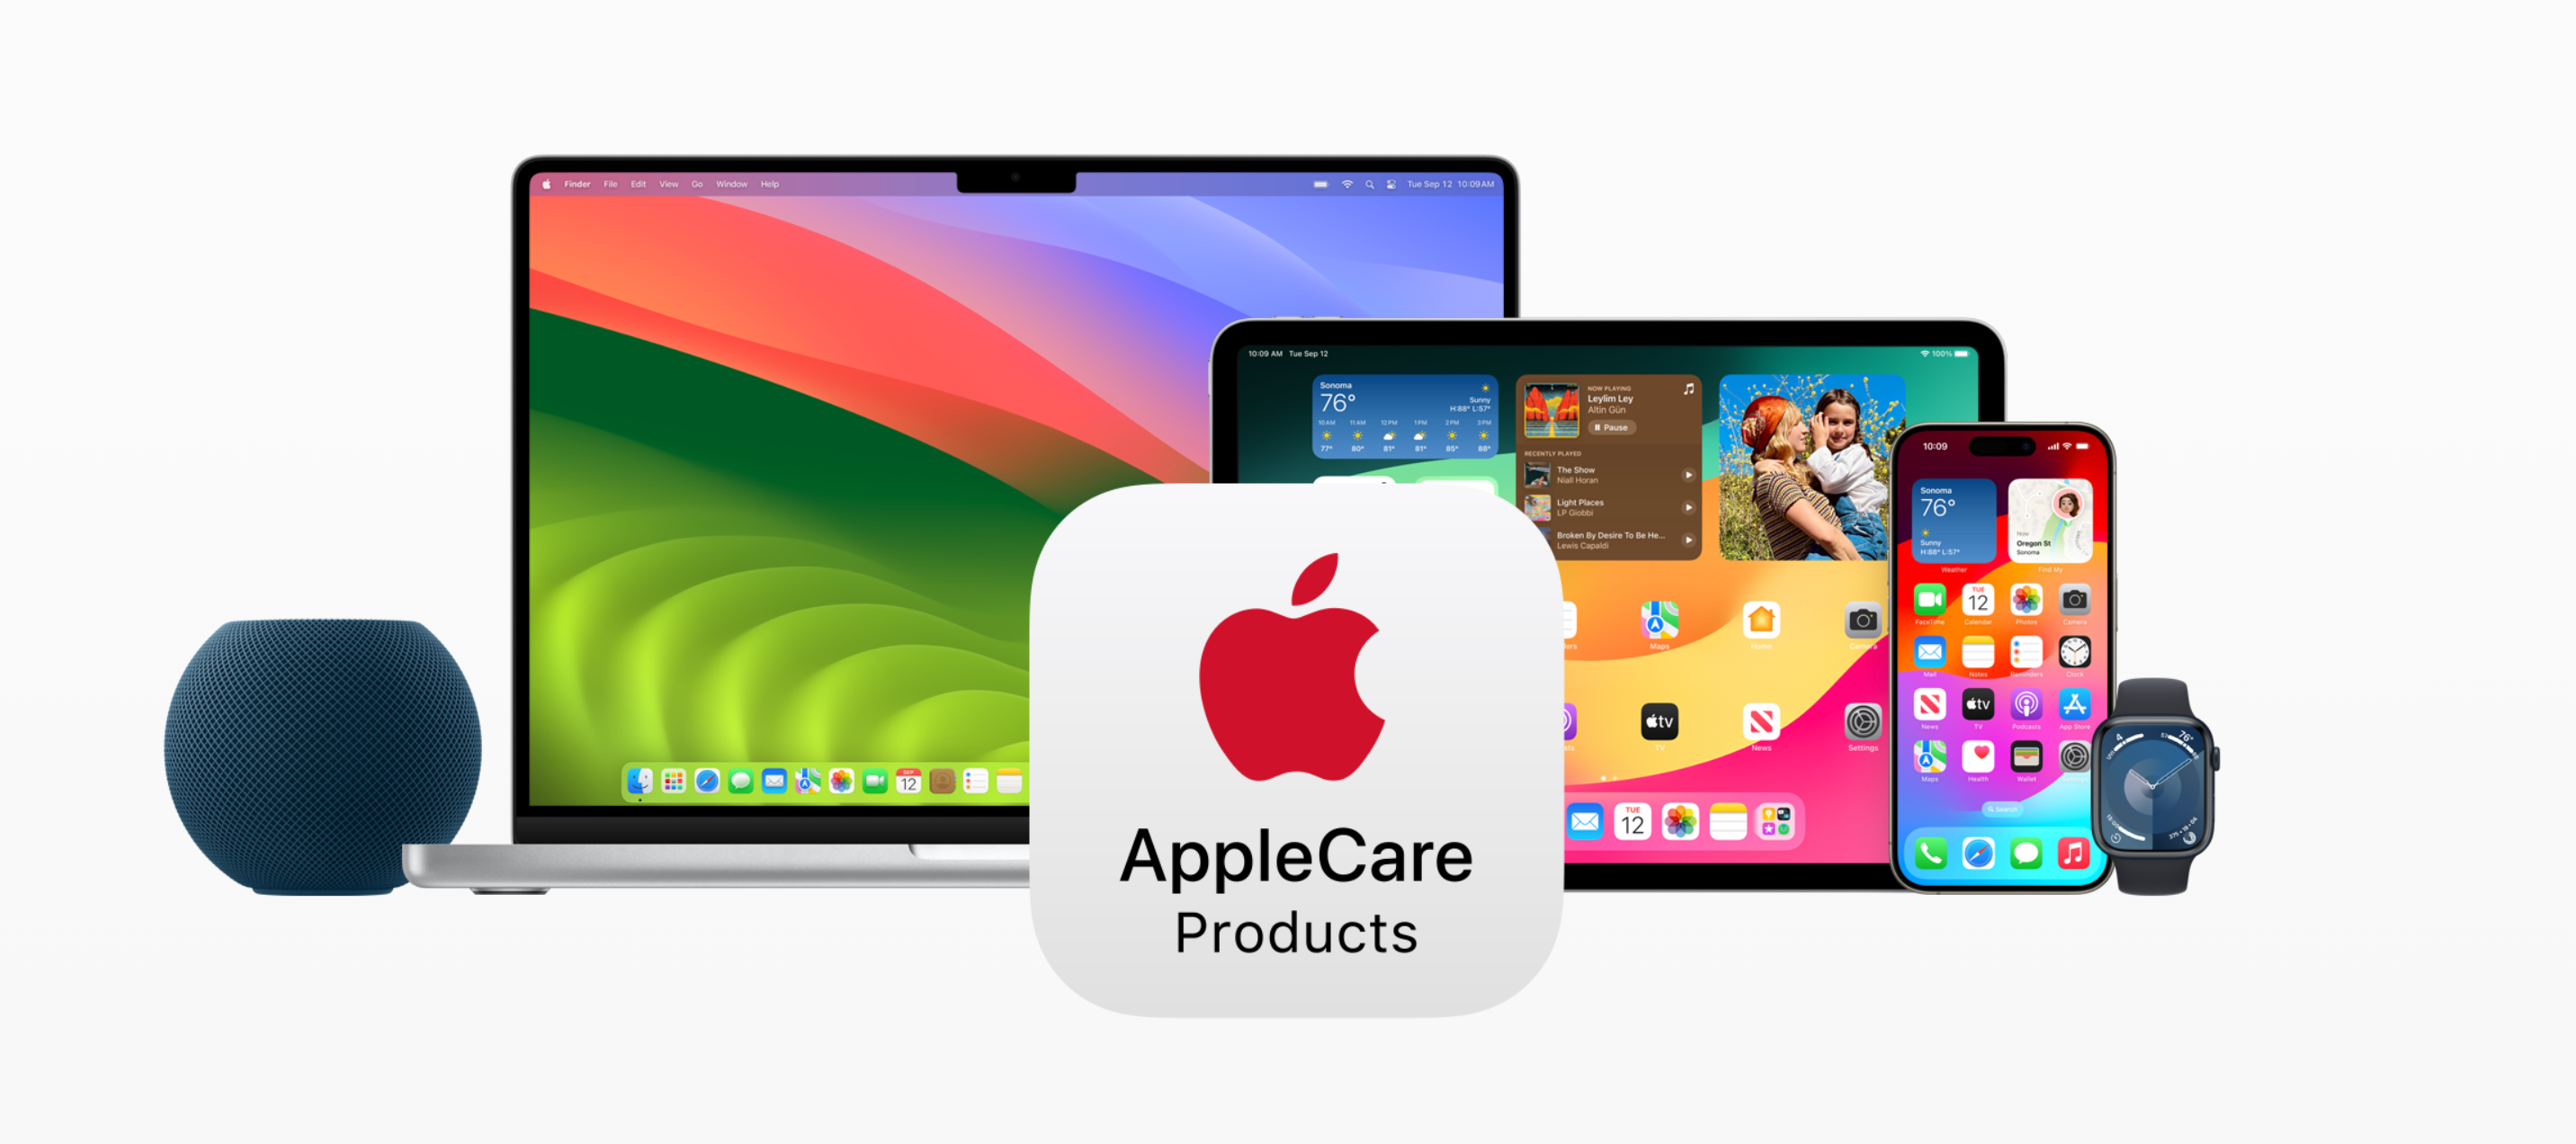 Μια διαφήμιση της Apple που δείχνει τη γκάμα προϊόντων που είναι συμβατά με το AppleCare, συμπεριλαμβανομένων των HomePod, Mac, iPad, Apple Watch και iPhone